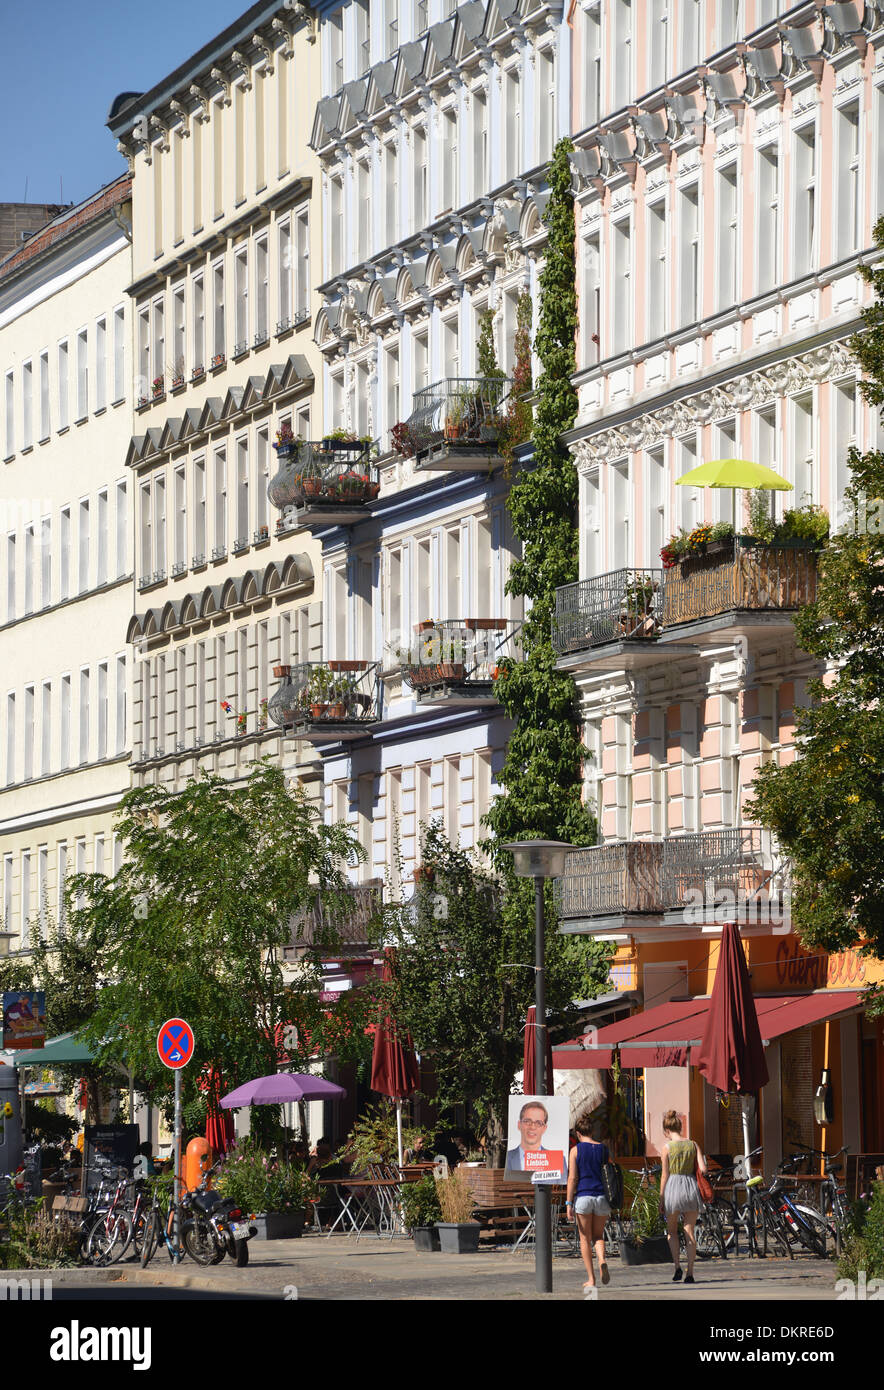 Altbauten, Oderberger Straße, Prenzlauer Berg, Berlin, Deutschland Stockfoto